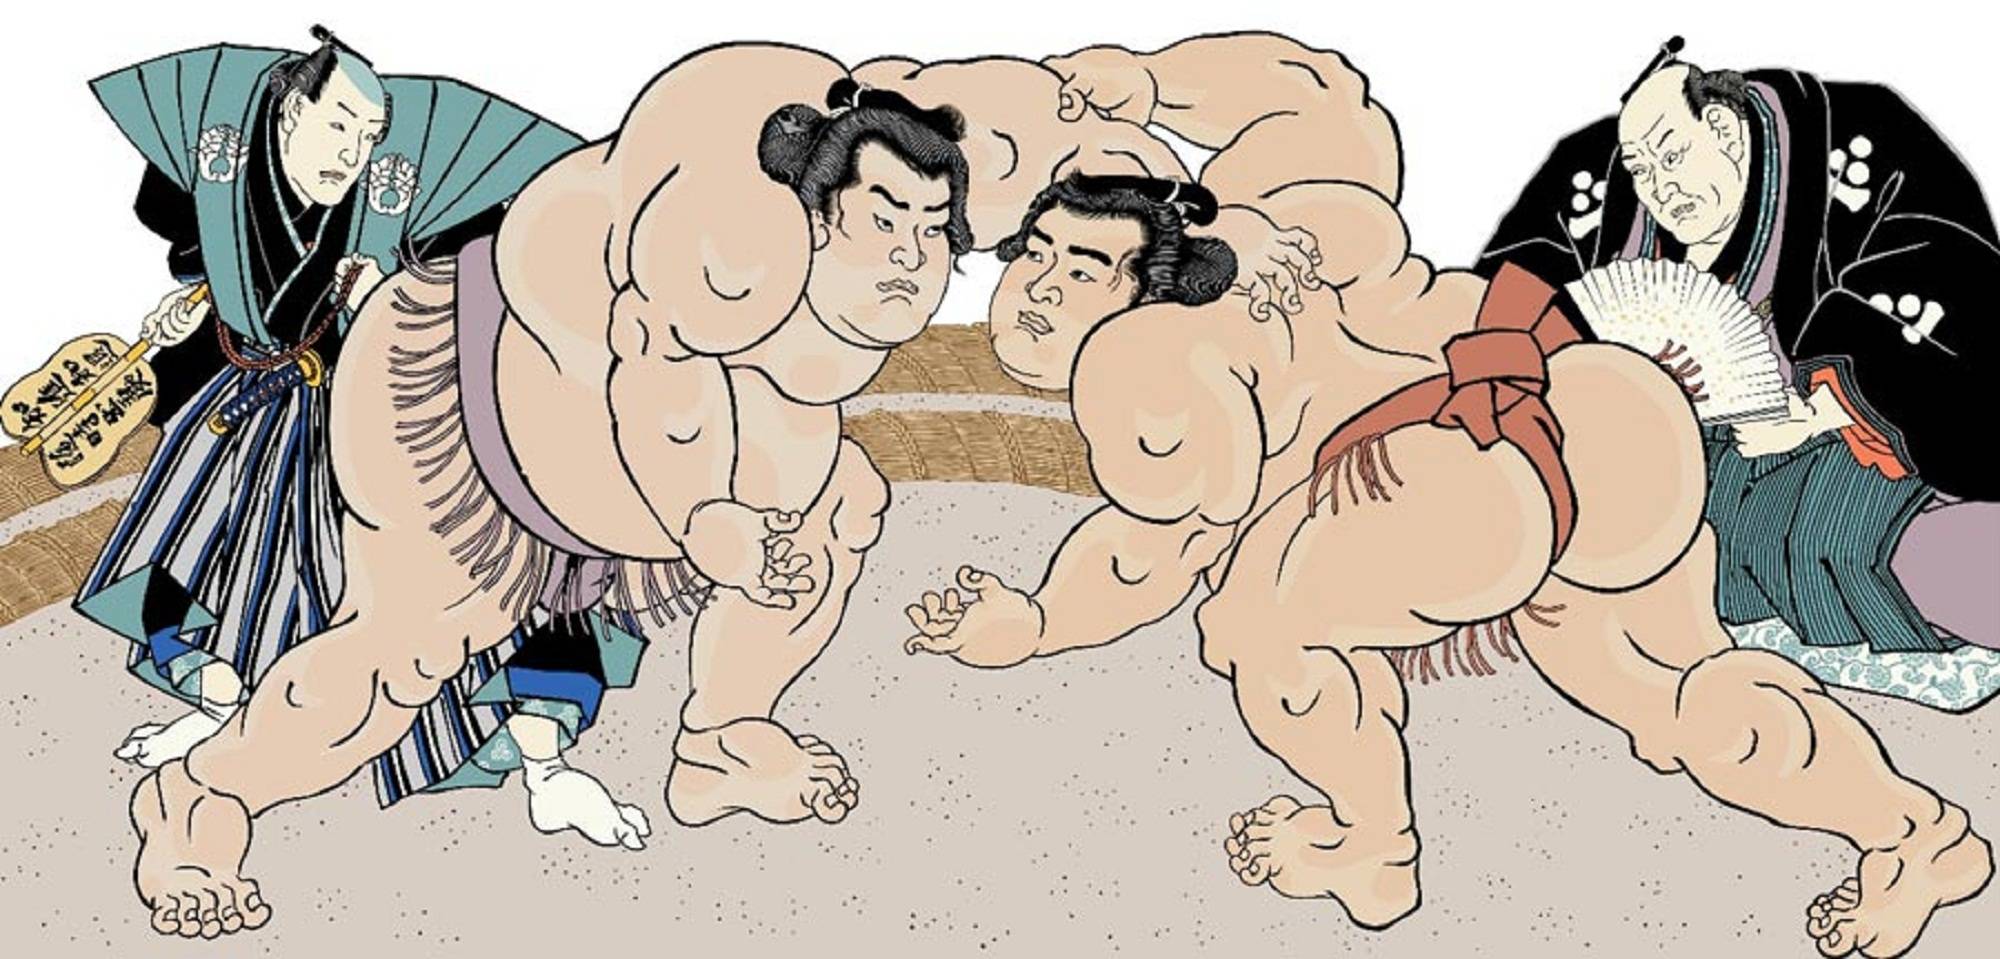 Istoria luptelor sumo: de la dans pentru zei la sport pentru spectatori